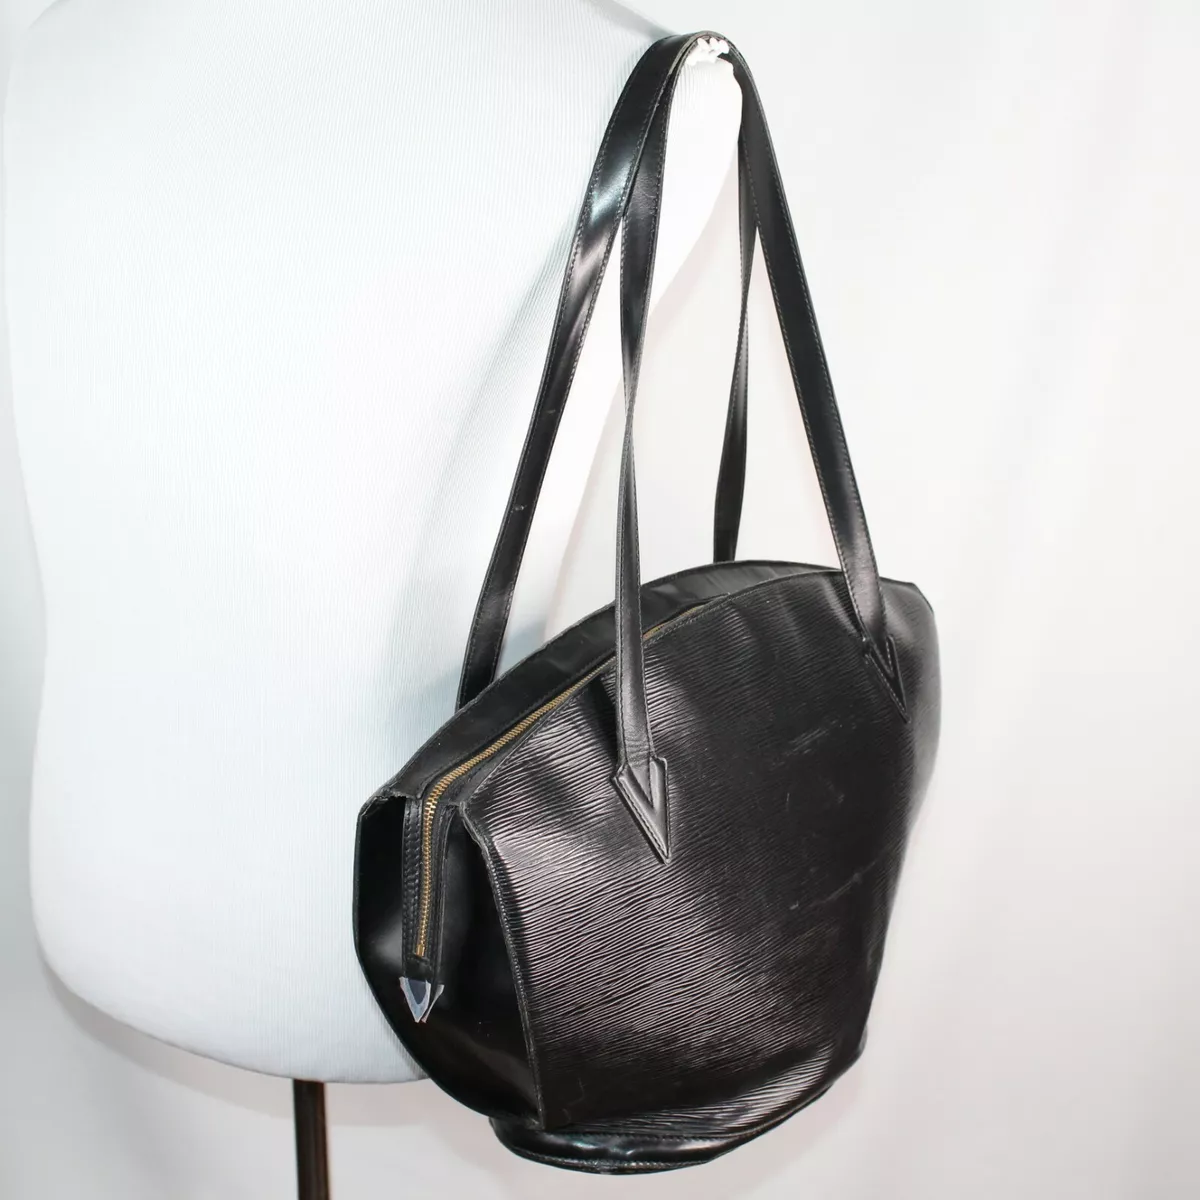 A Vintage Authentic Louis Vuitton St Jacques Black EPI Leather Bag Handbag